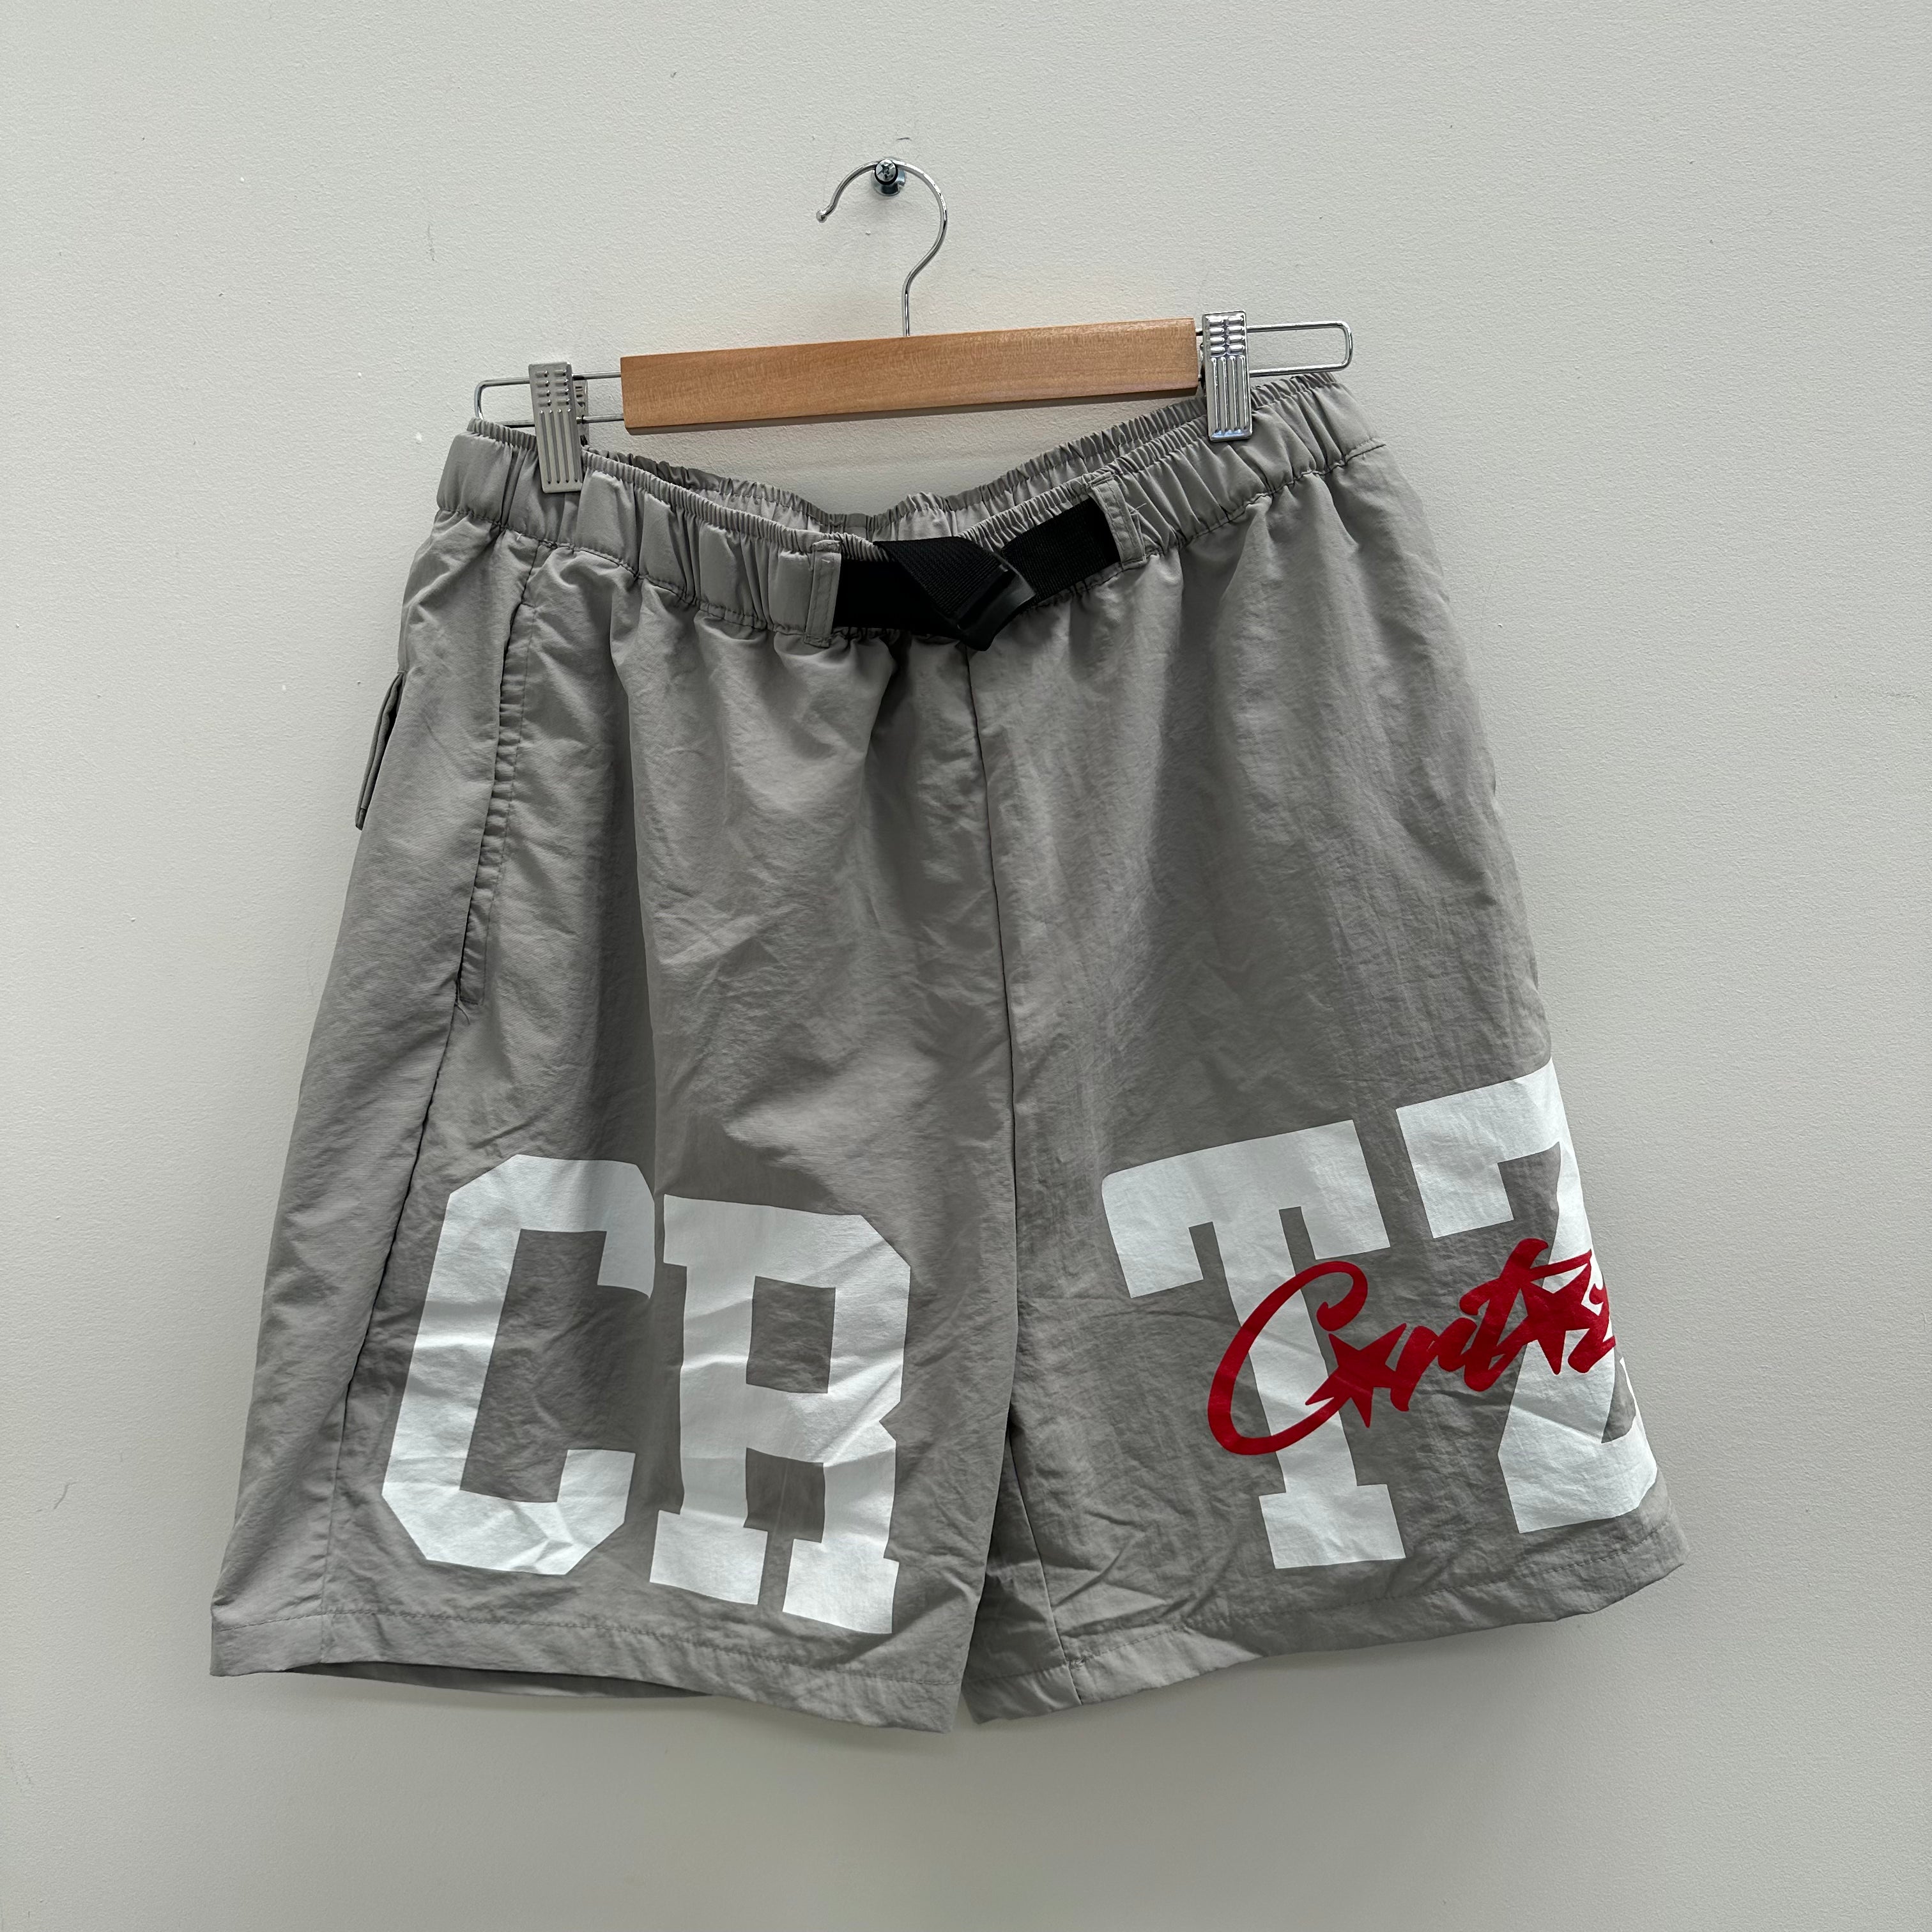 Corteiz CRTZ Nylon Shorts Grey (Size L)